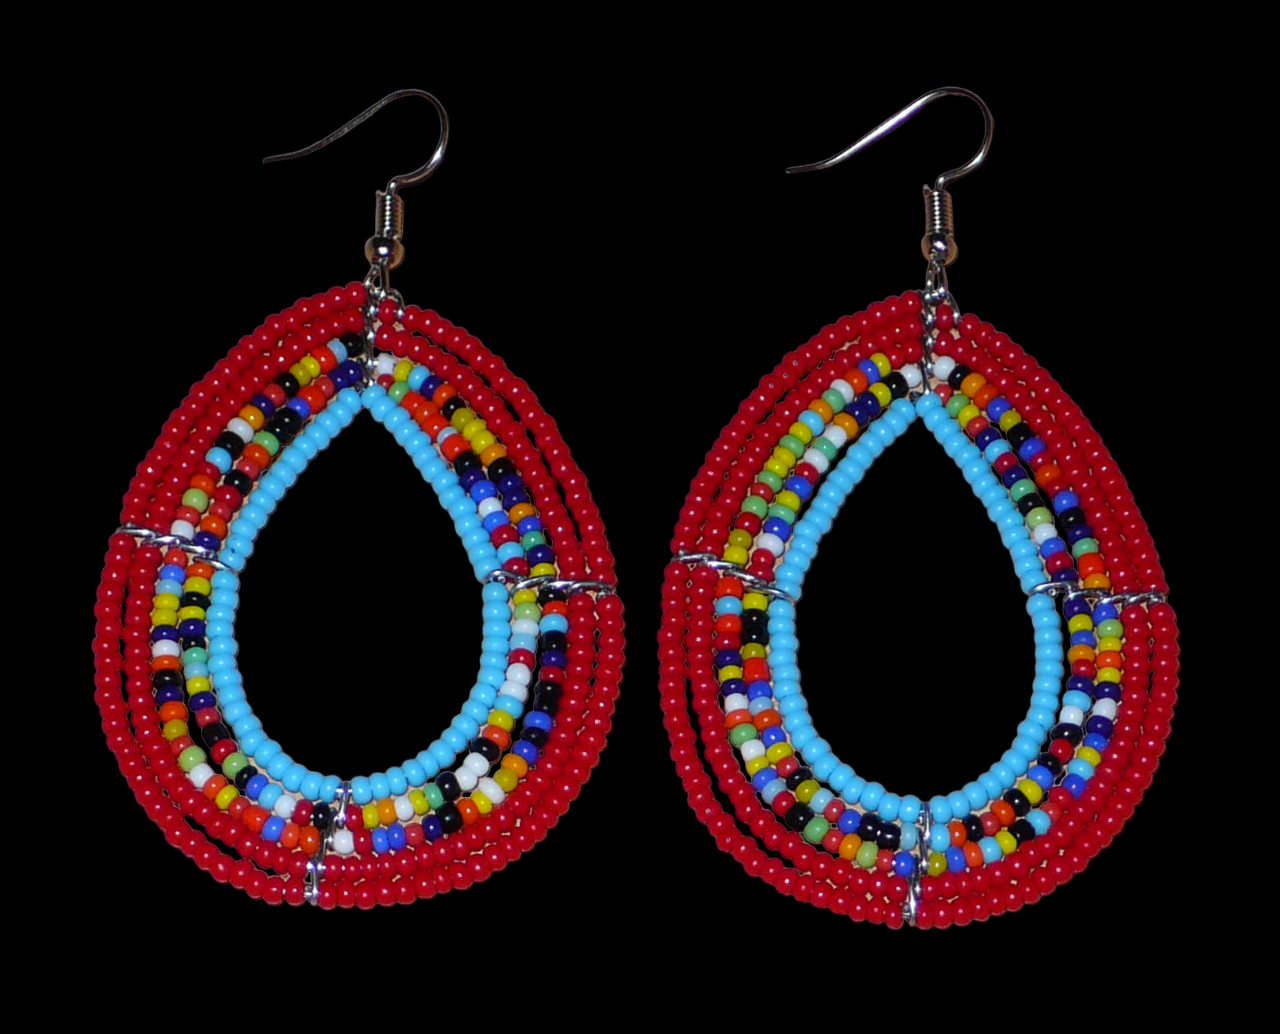 Boucles d'oreilles en forme de gouttes composées de perles de rocaille rouges, bleues et multicolores. Elles mesurent 7,5 cm de long et 4 cm de large et se portent sur des oreilles percées. Photographiées sur un fond noir.